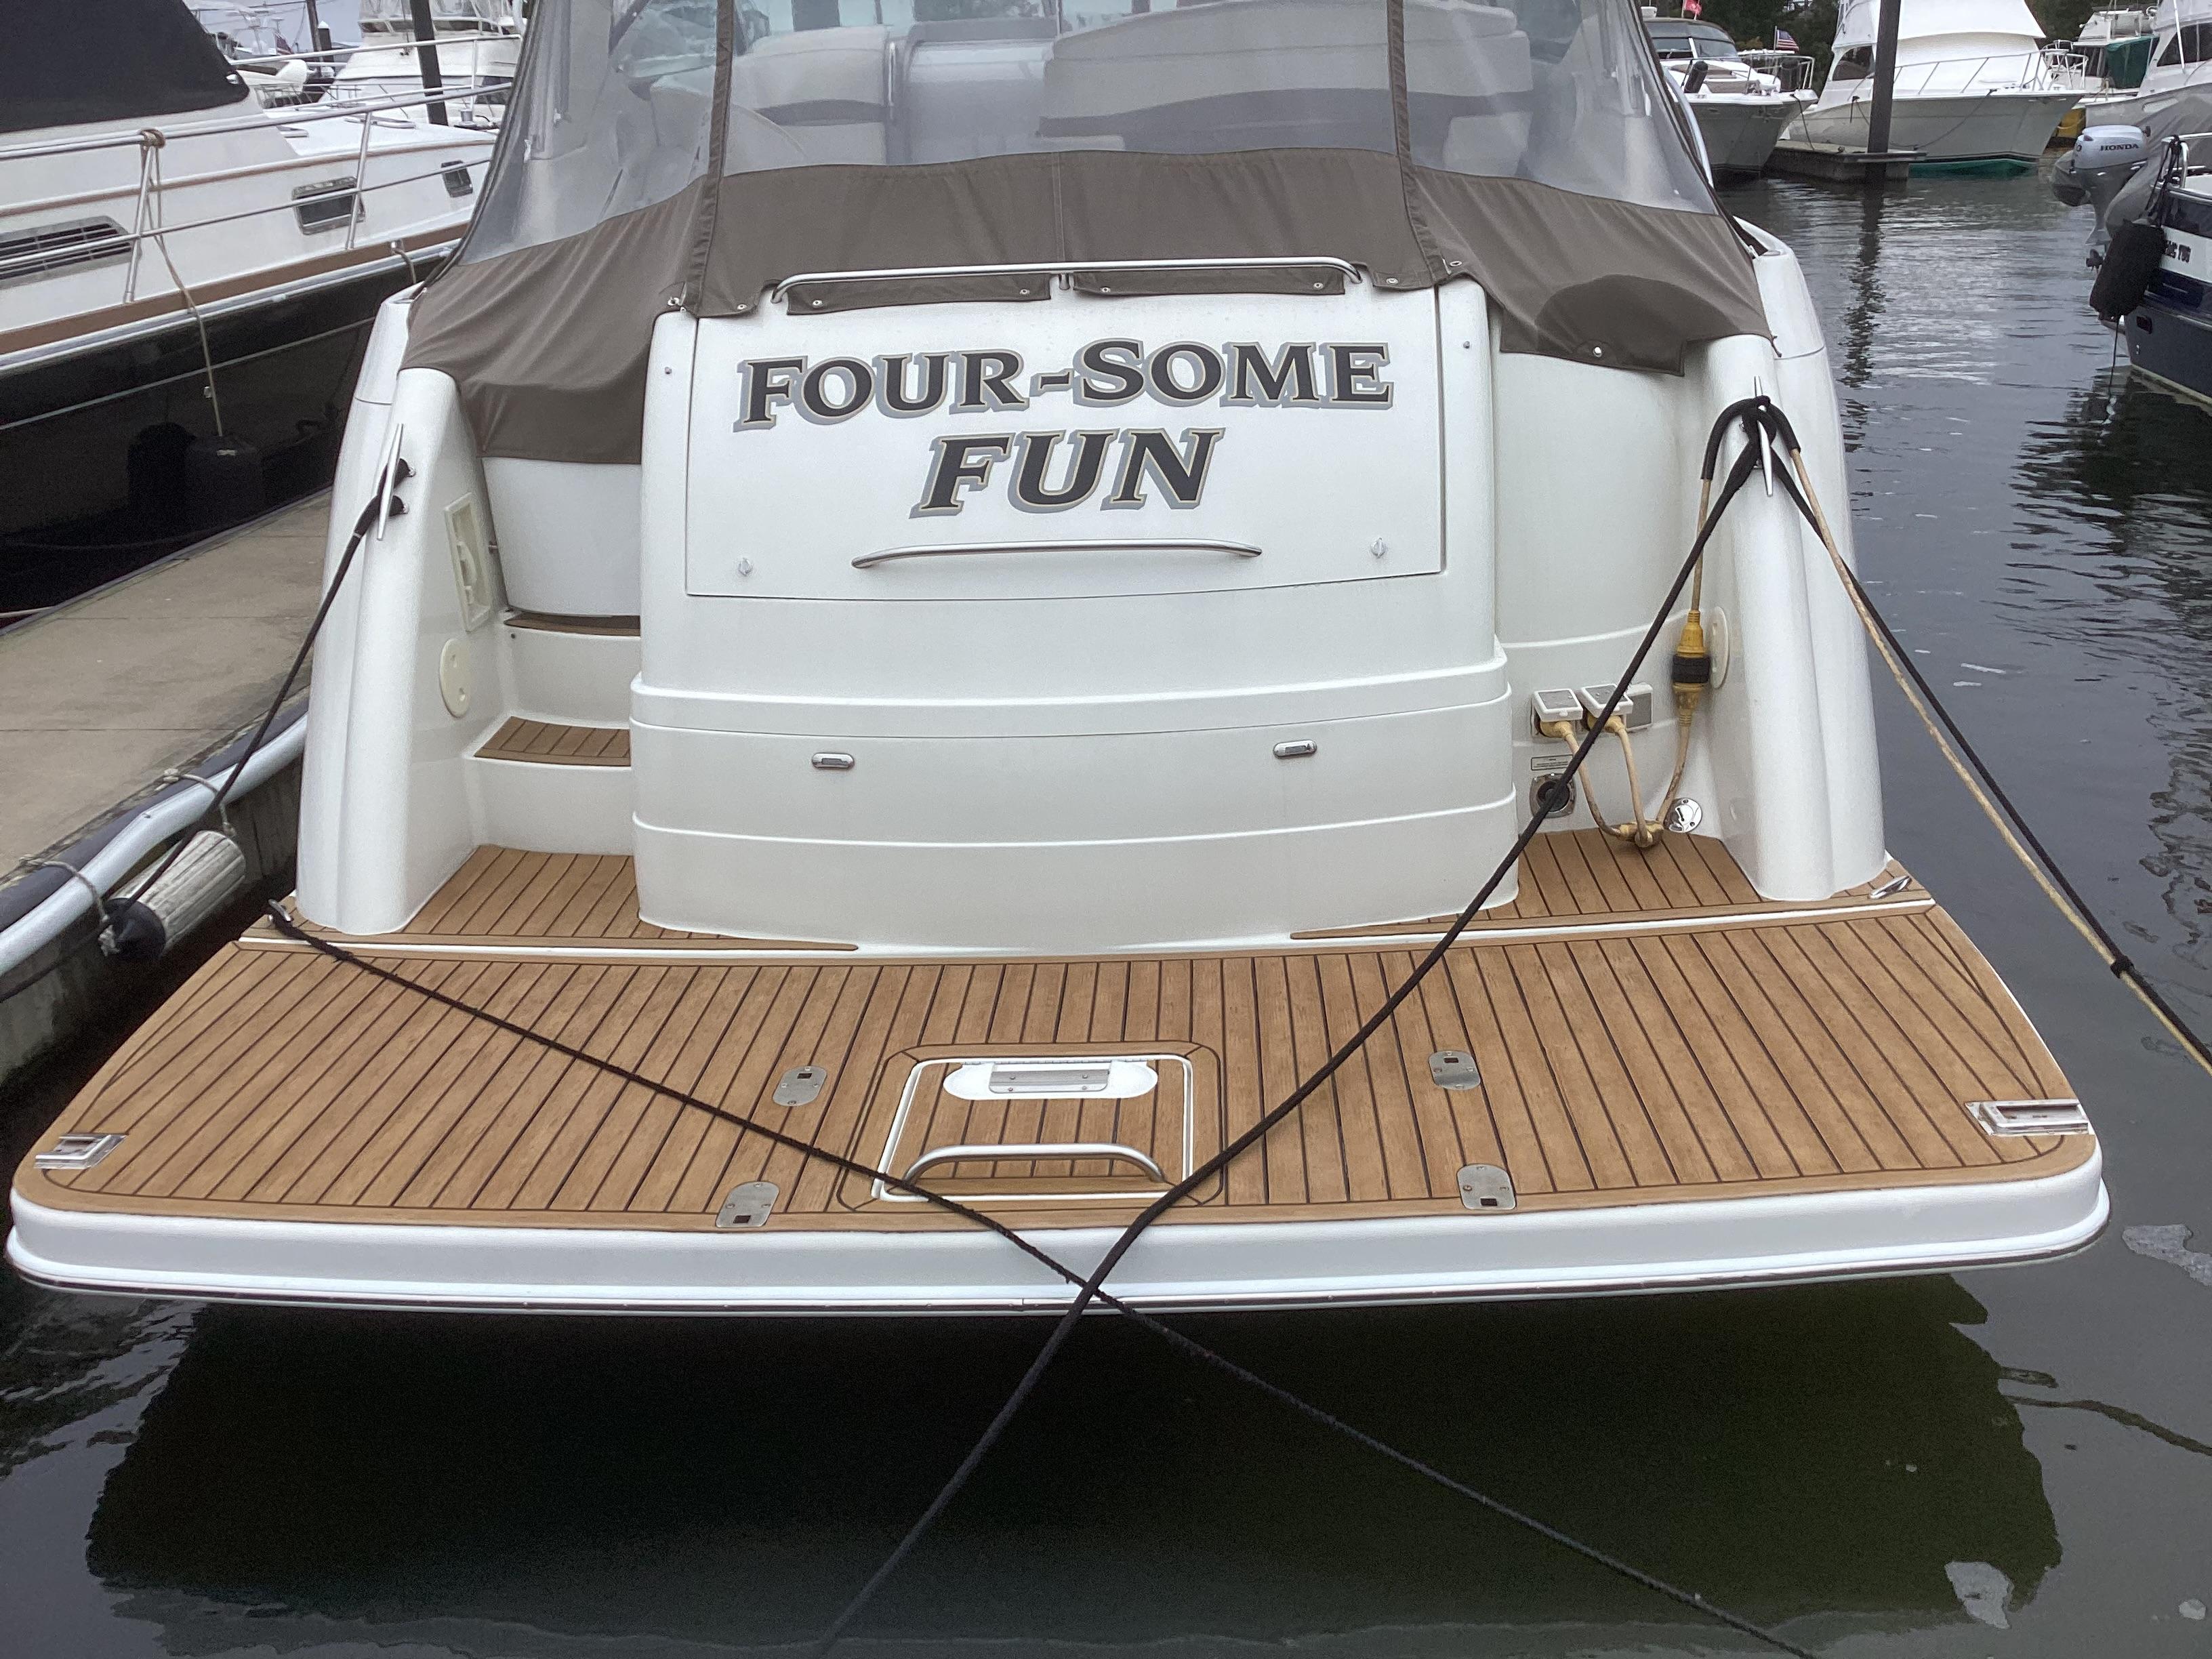 Boat foursome